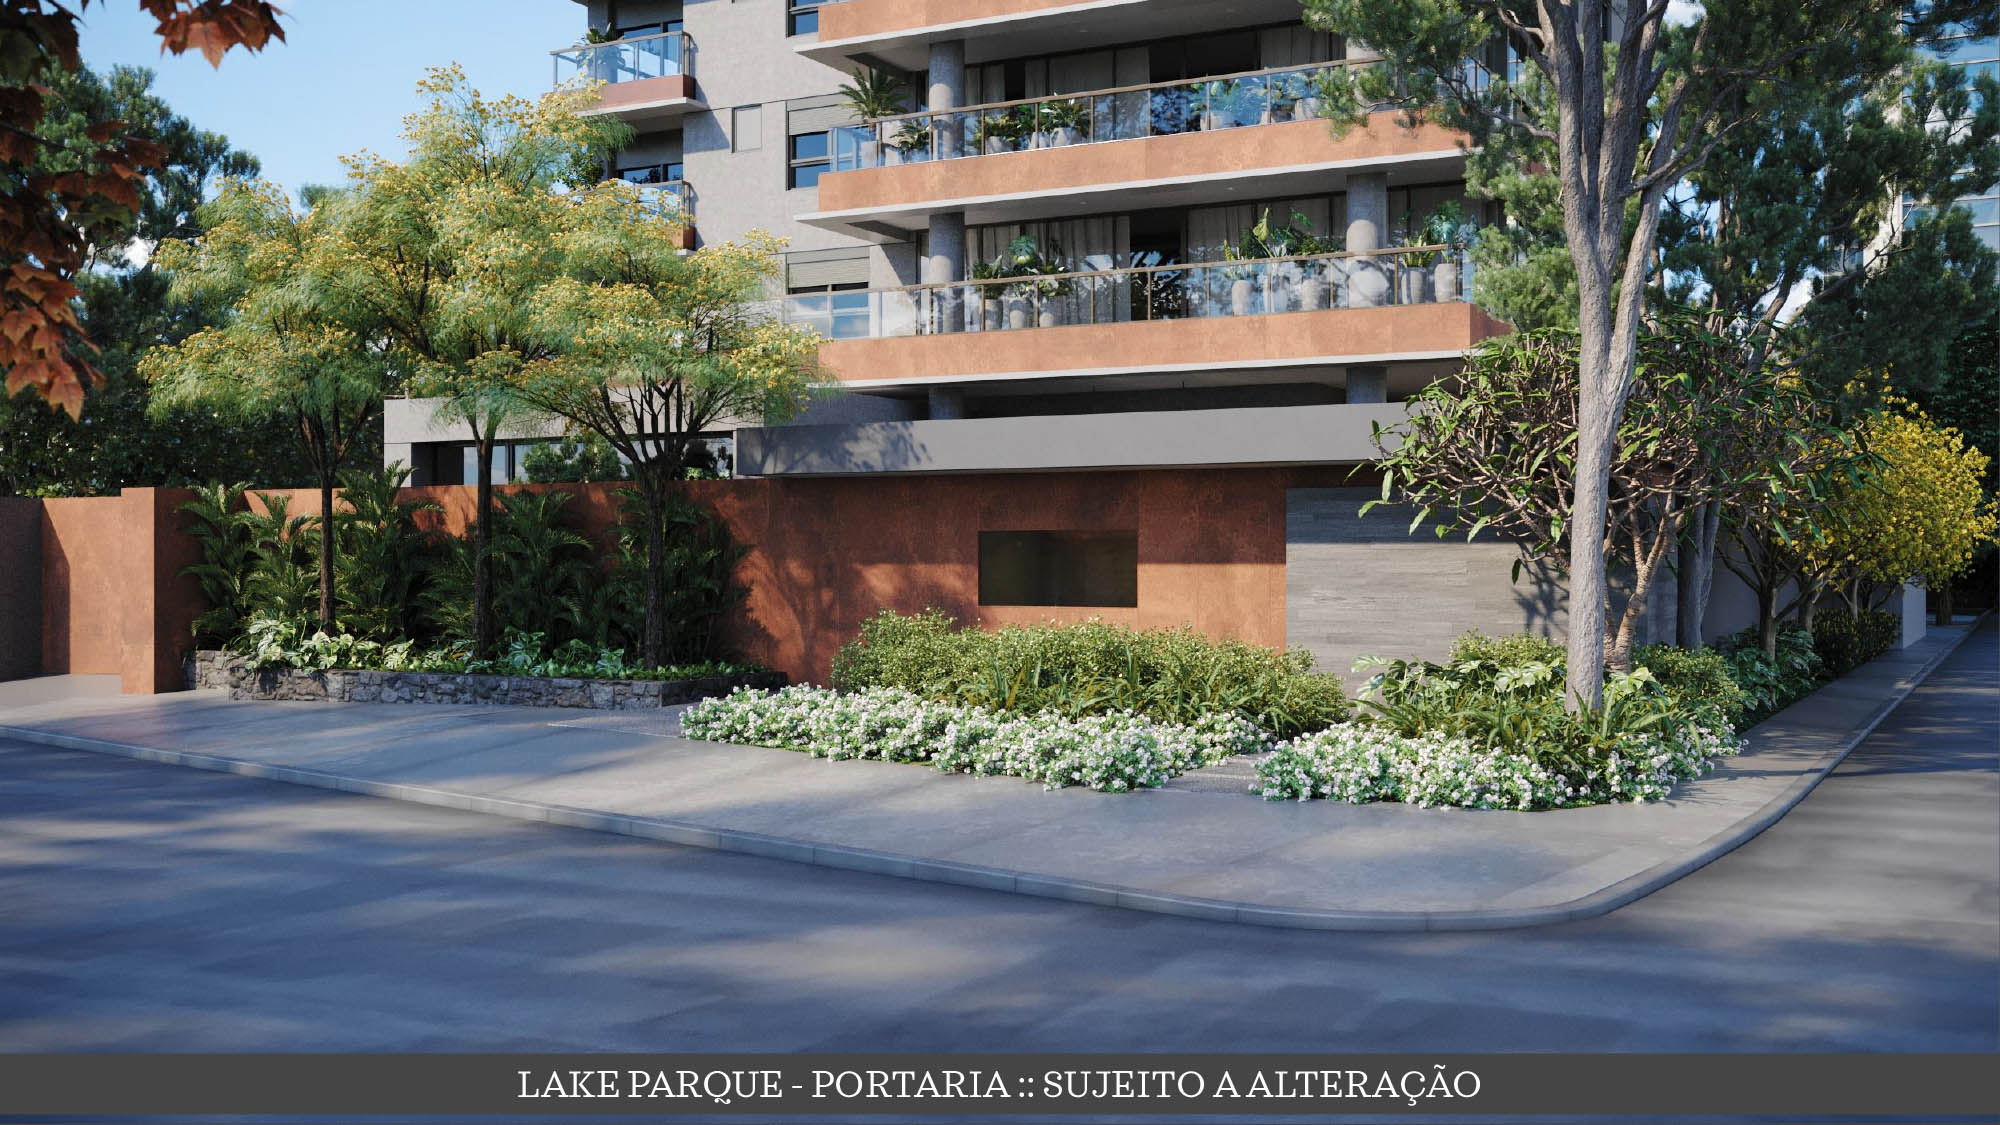 Lake Parque Ibirapuera - Atendimento Especializado (11) 4116-9995 | 98026-0864